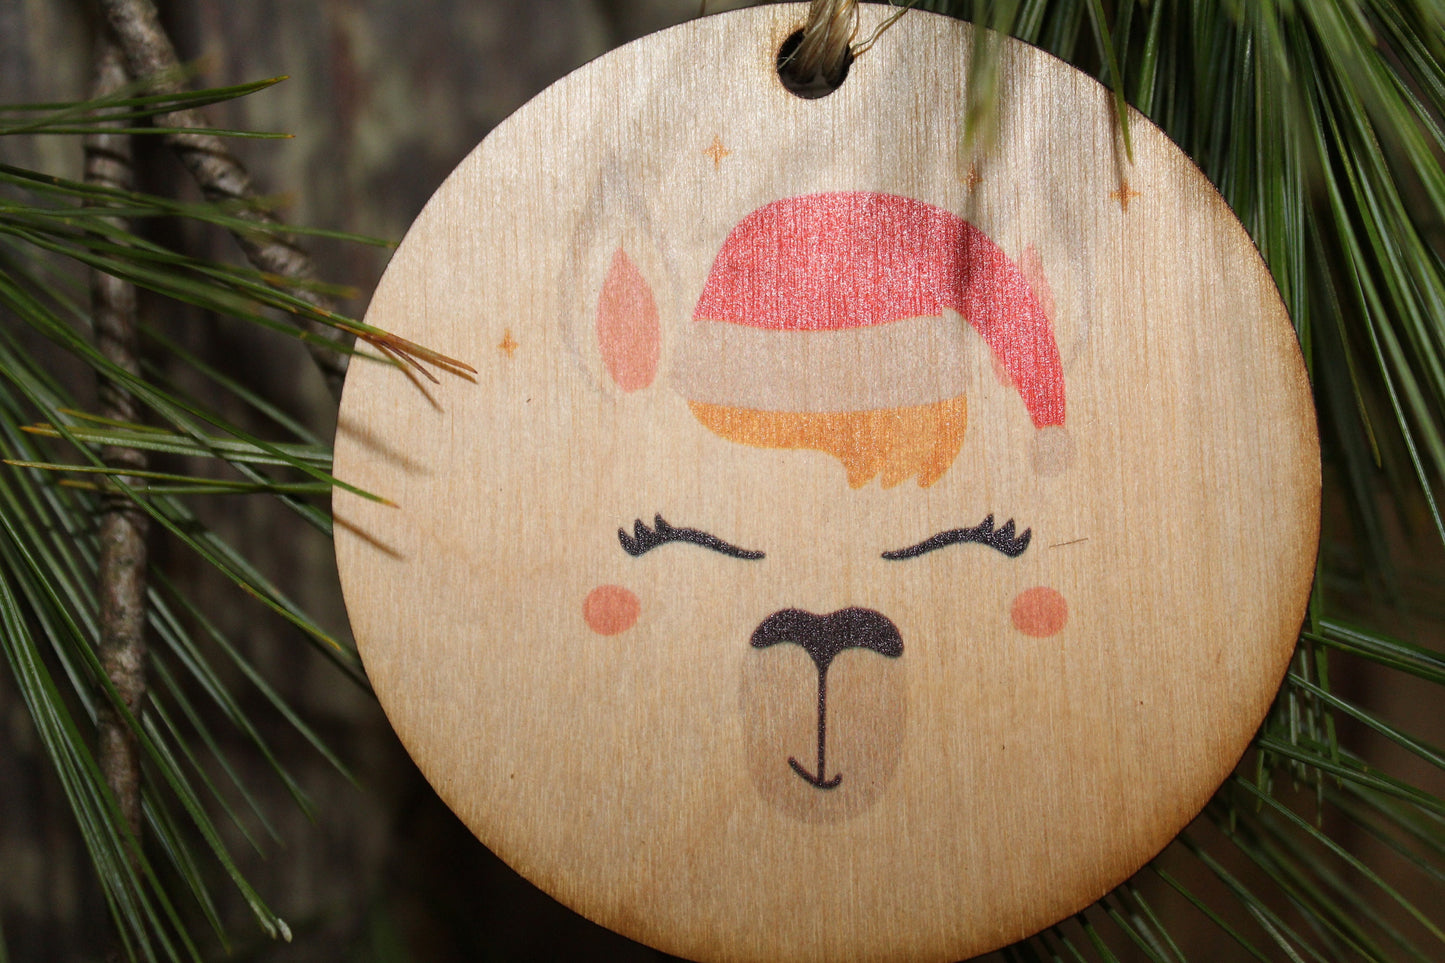 Llama Face Ornament Santa Llama Wood Slice Poinsettia Up-close Primitive Christmas Ornament Rustic Tree Printed